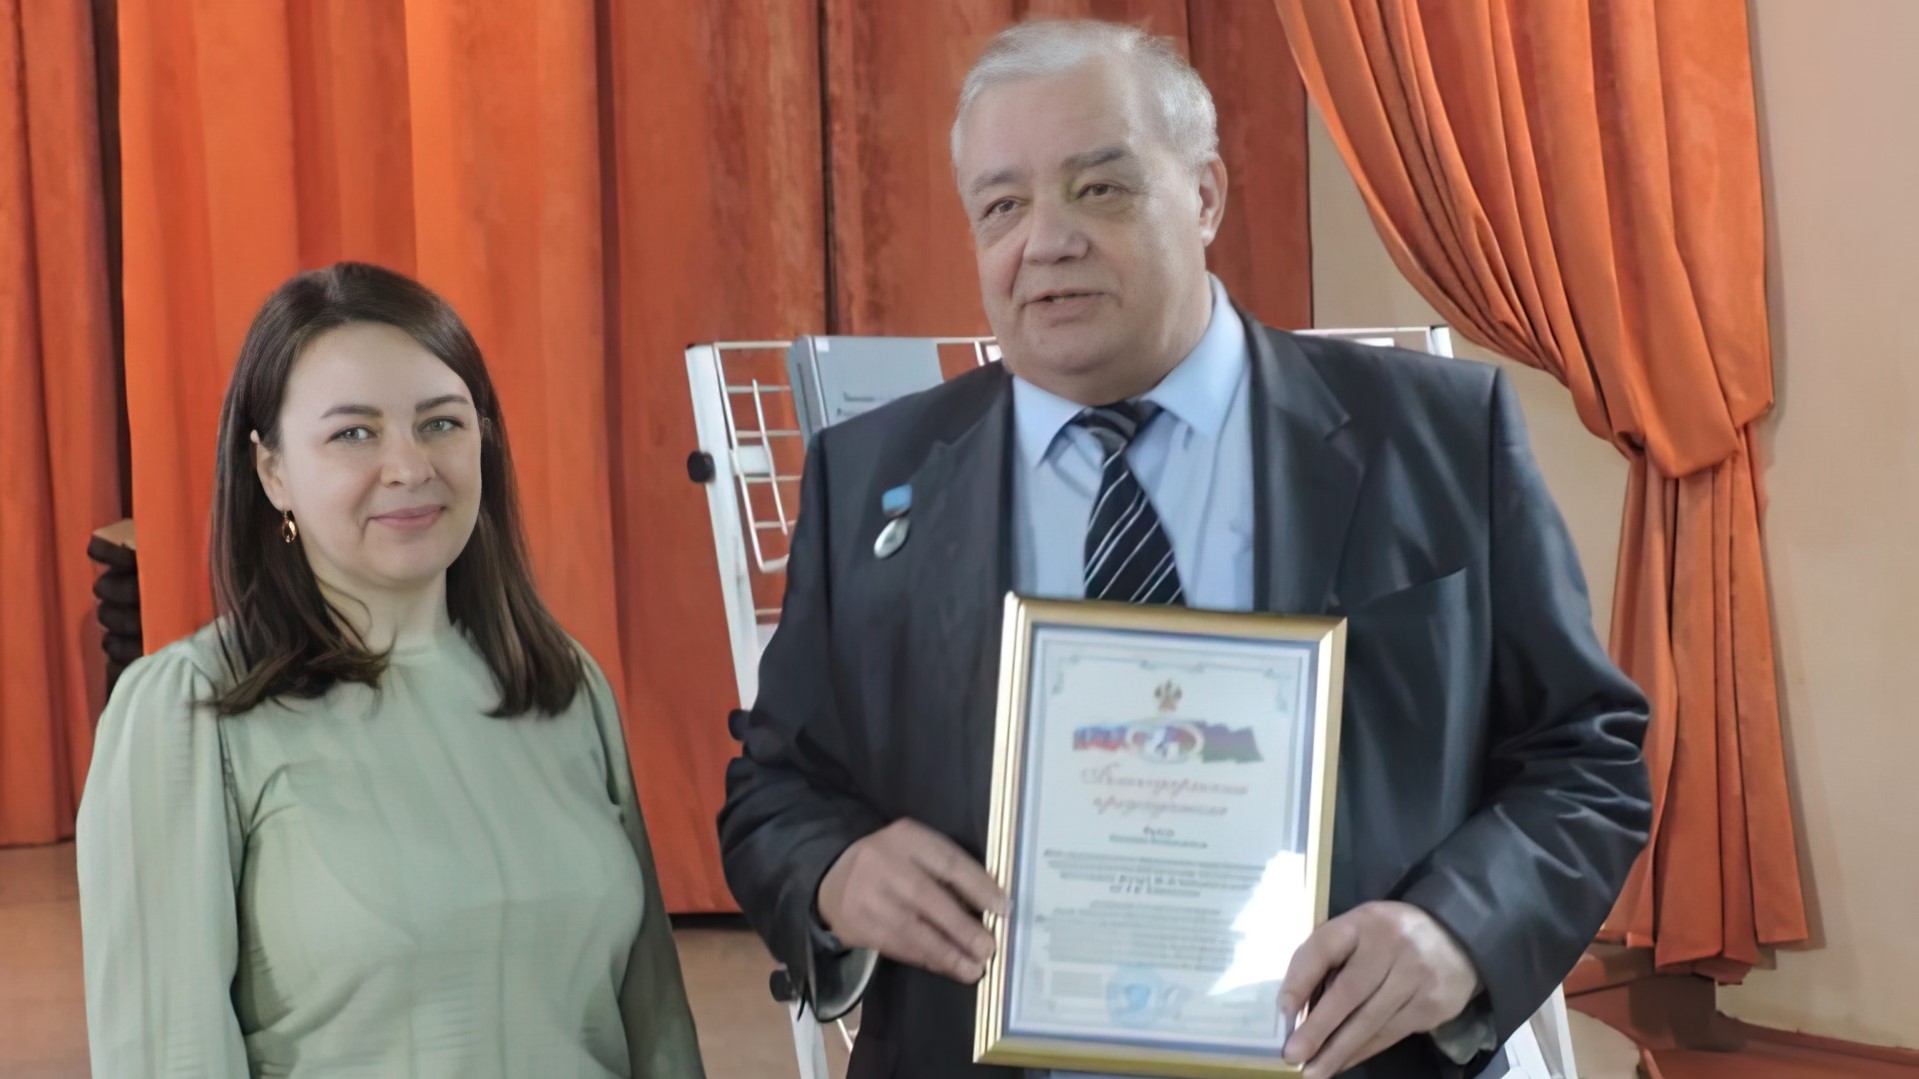 Благодарностью избирательной комиссии Краснодарского края награжден победитель конкурса среди библиотек